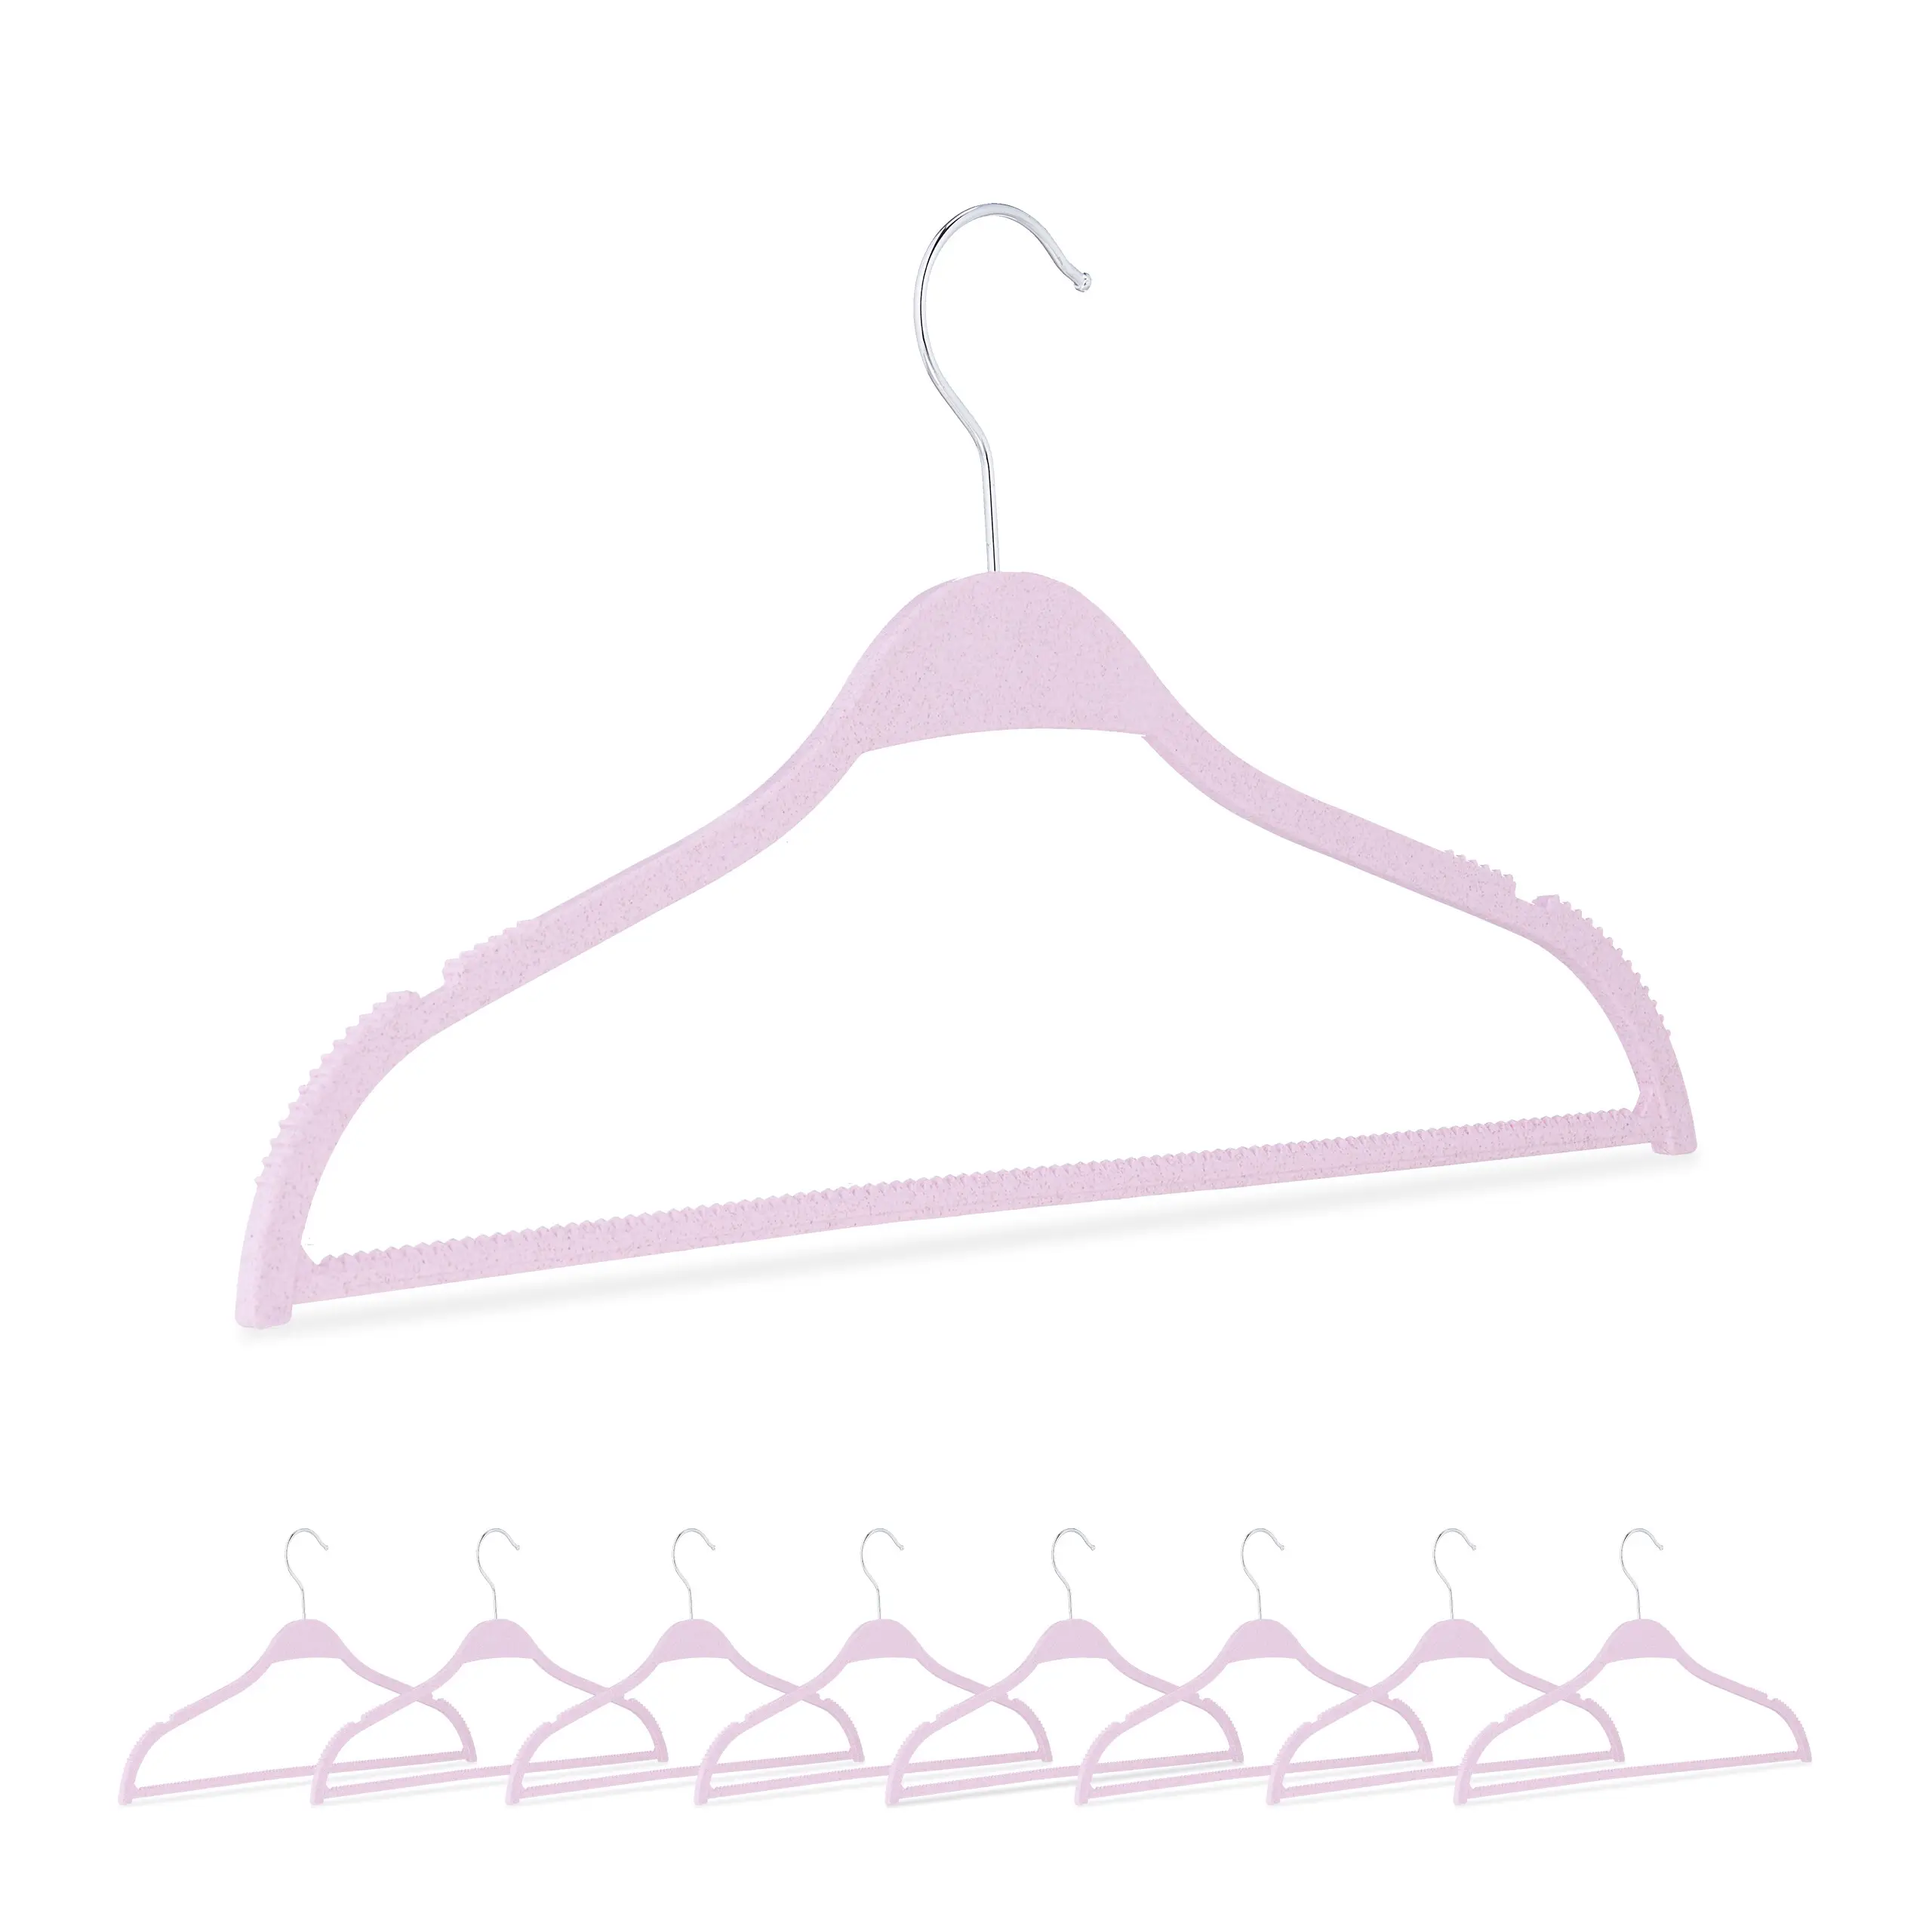 Kleiderb眉gel aus Weizenstroh 10er Set | Kleideraufbewahrung